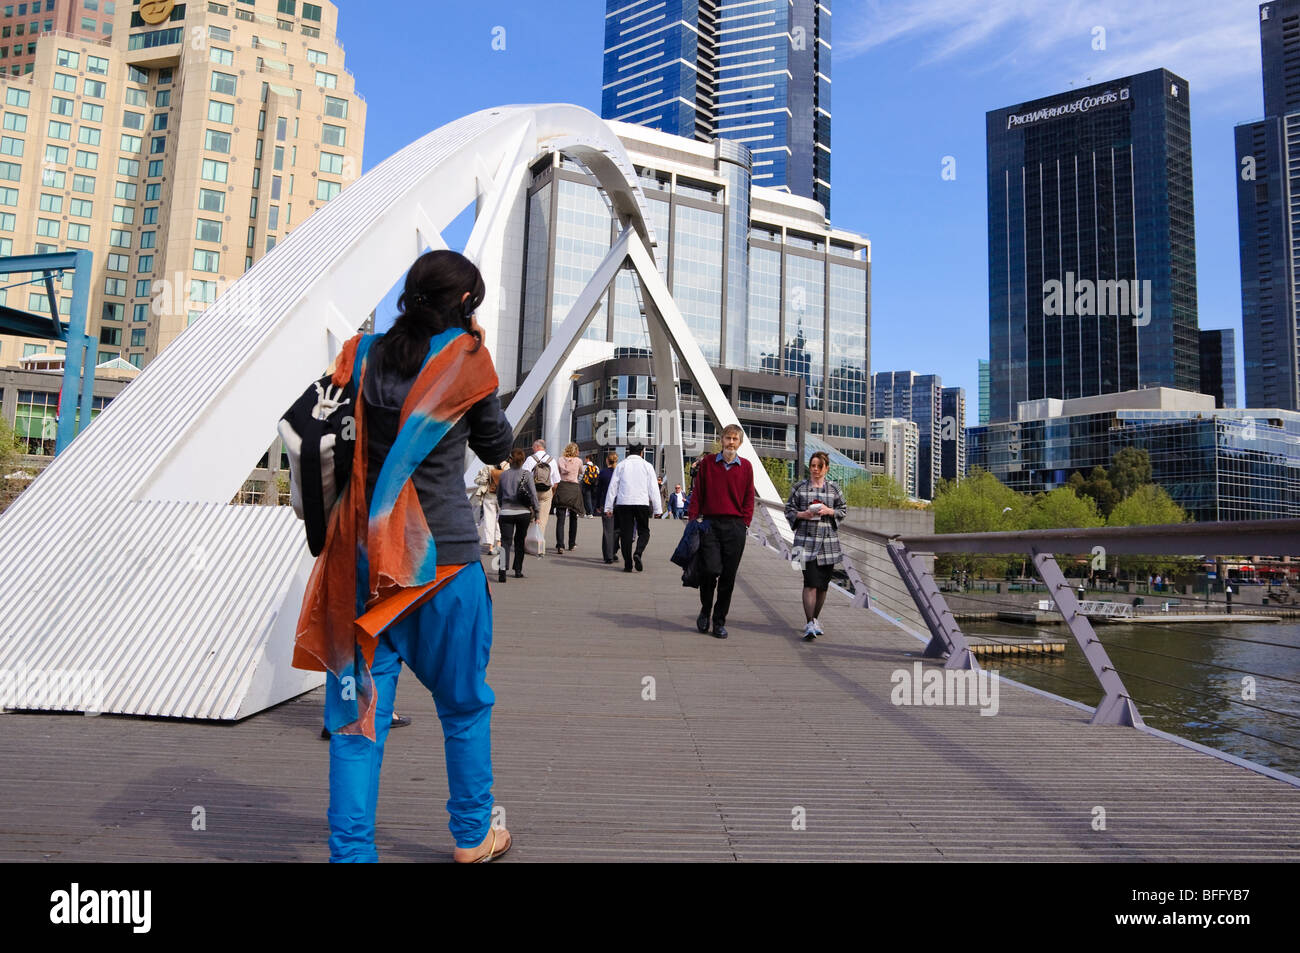 Migrante cruzando un puente peatonal. Foto de stock